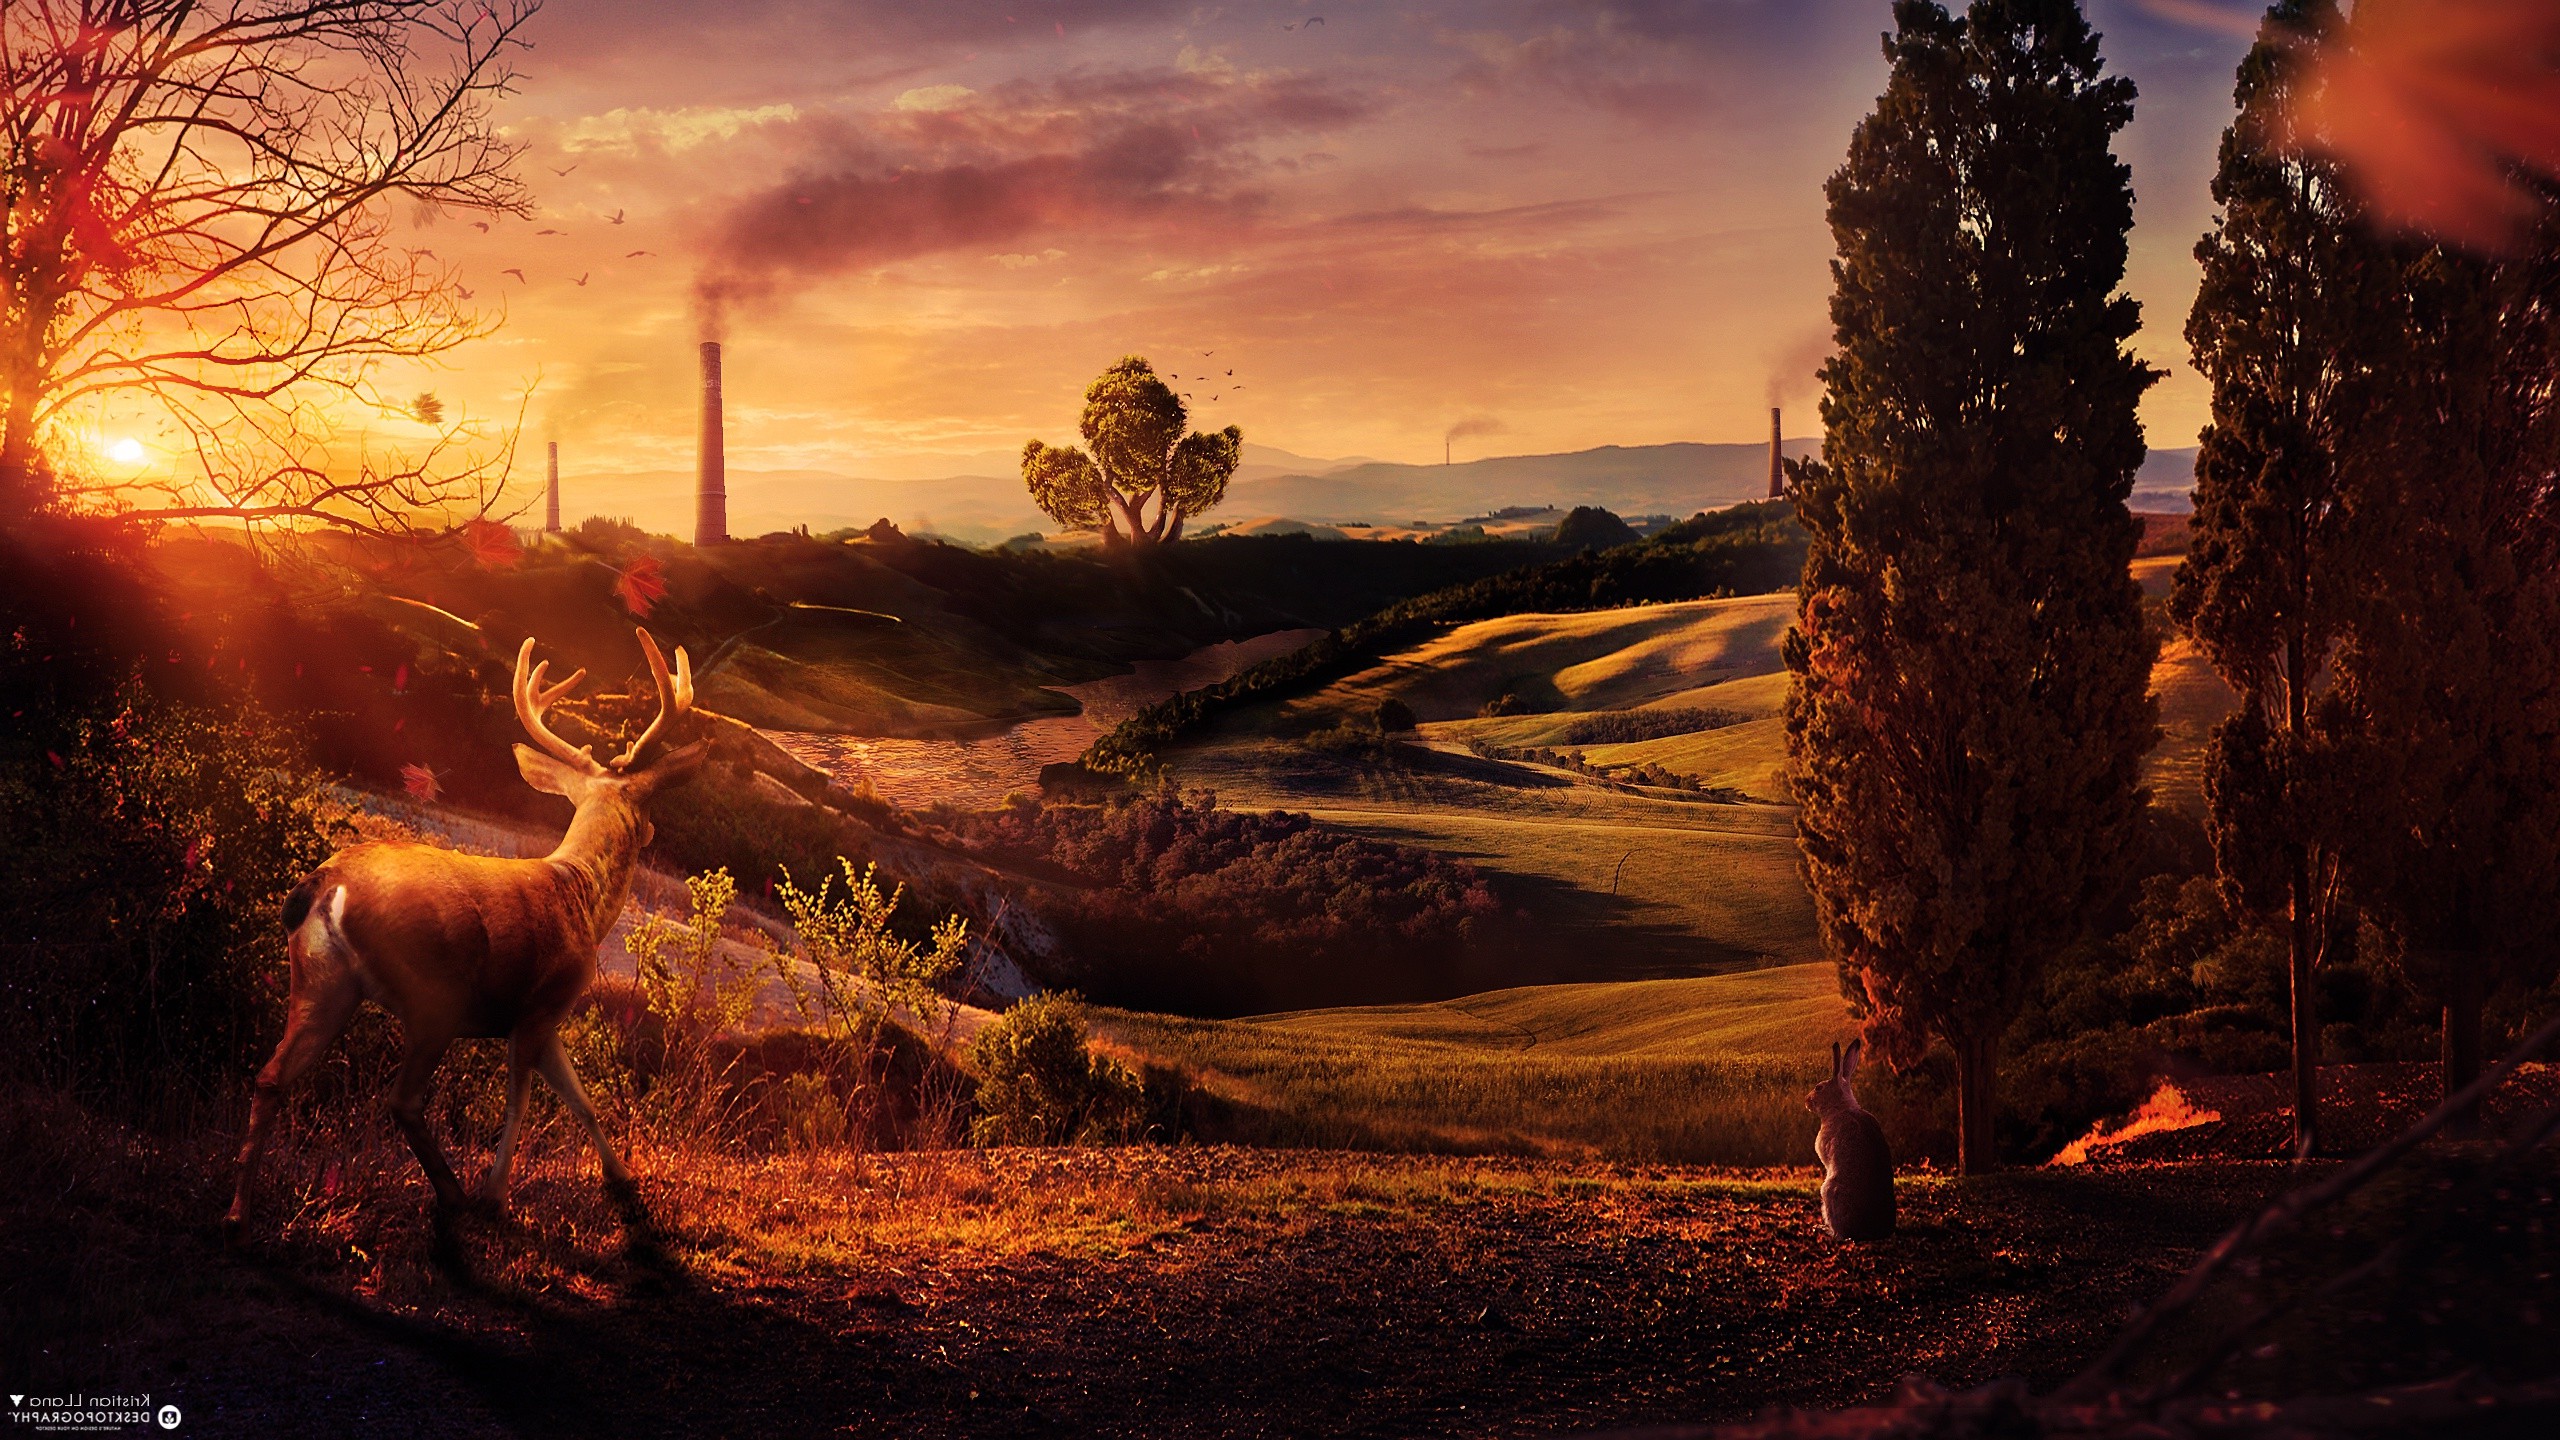 Desktopography, Nature, Landscape, Deer, Sunset, Digital Art Wallpapers